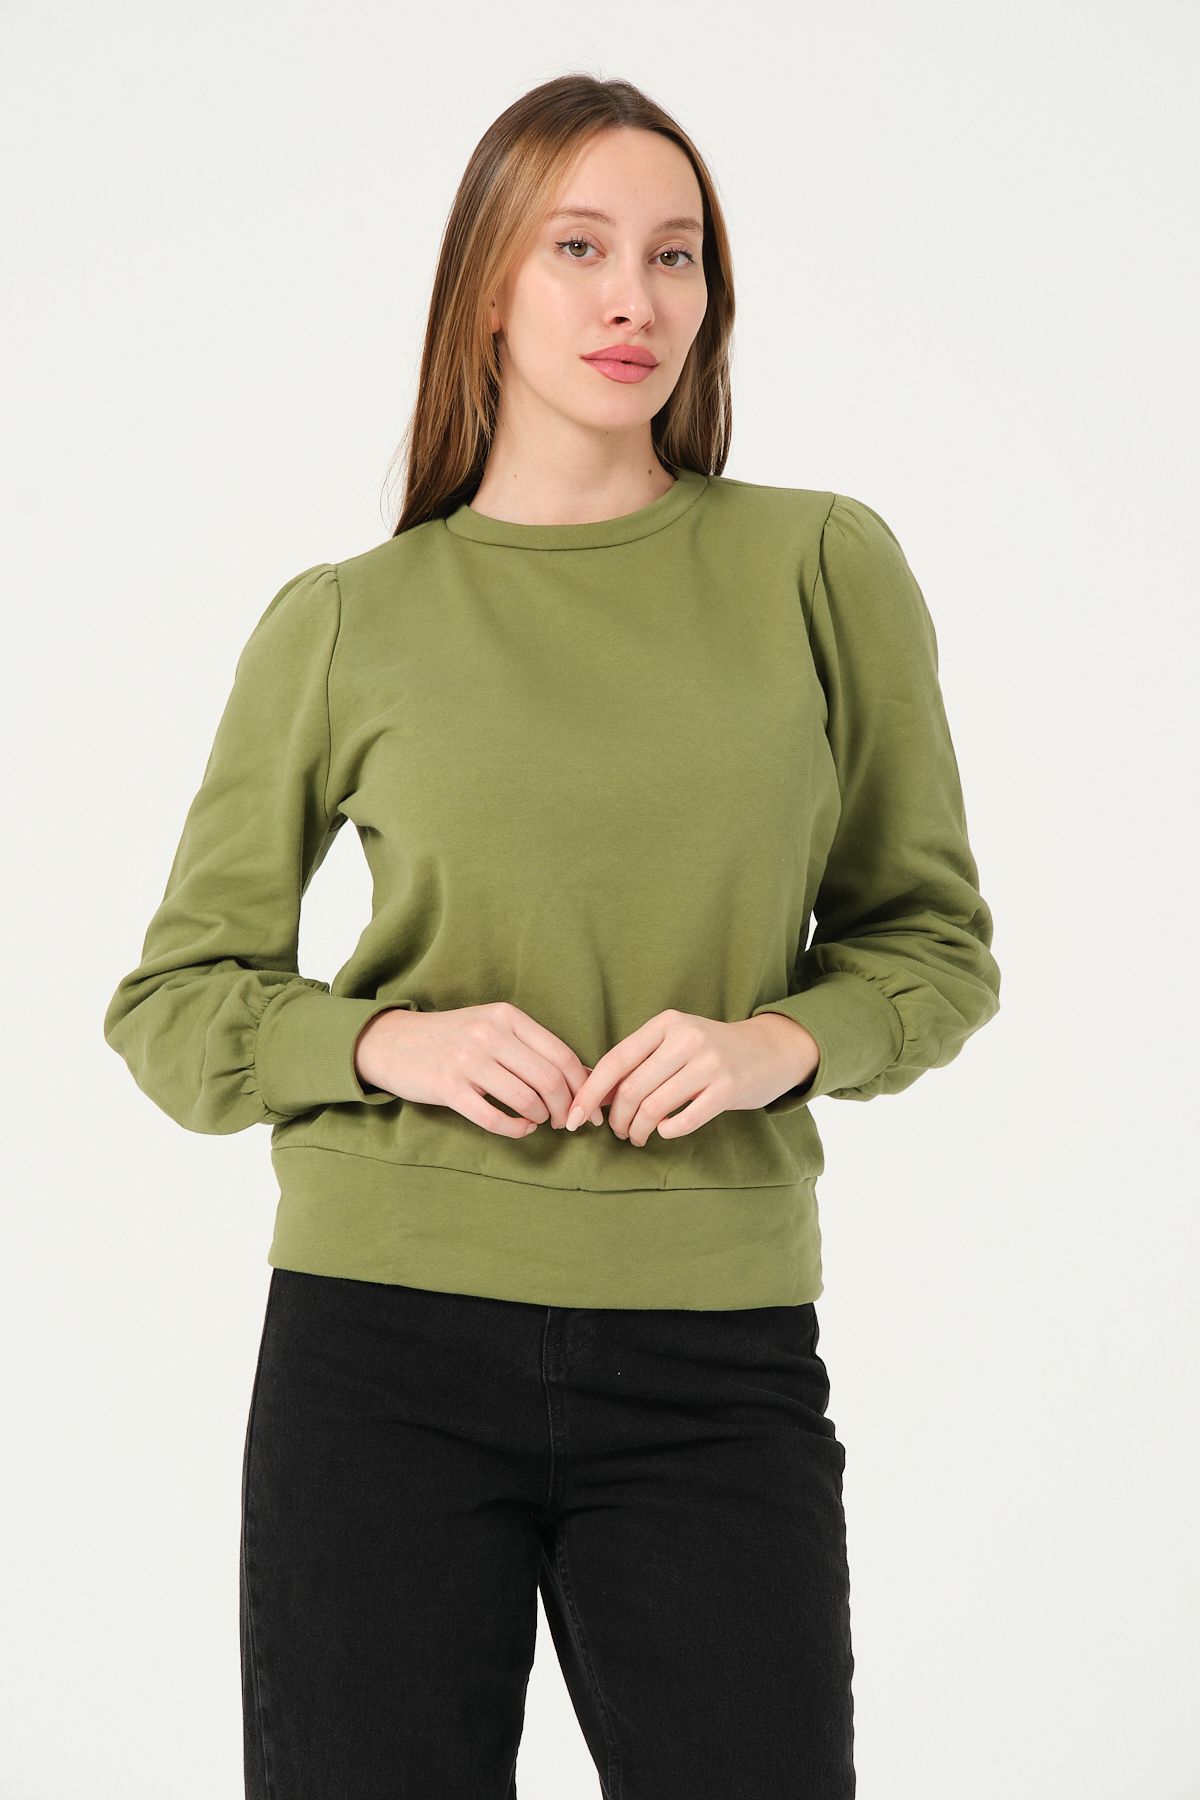 ES&SY P-004986 - Kadın Omuzu Büzgülü Pamuklu Uzun Kollu Sweatshirt - Yağ Yeşili